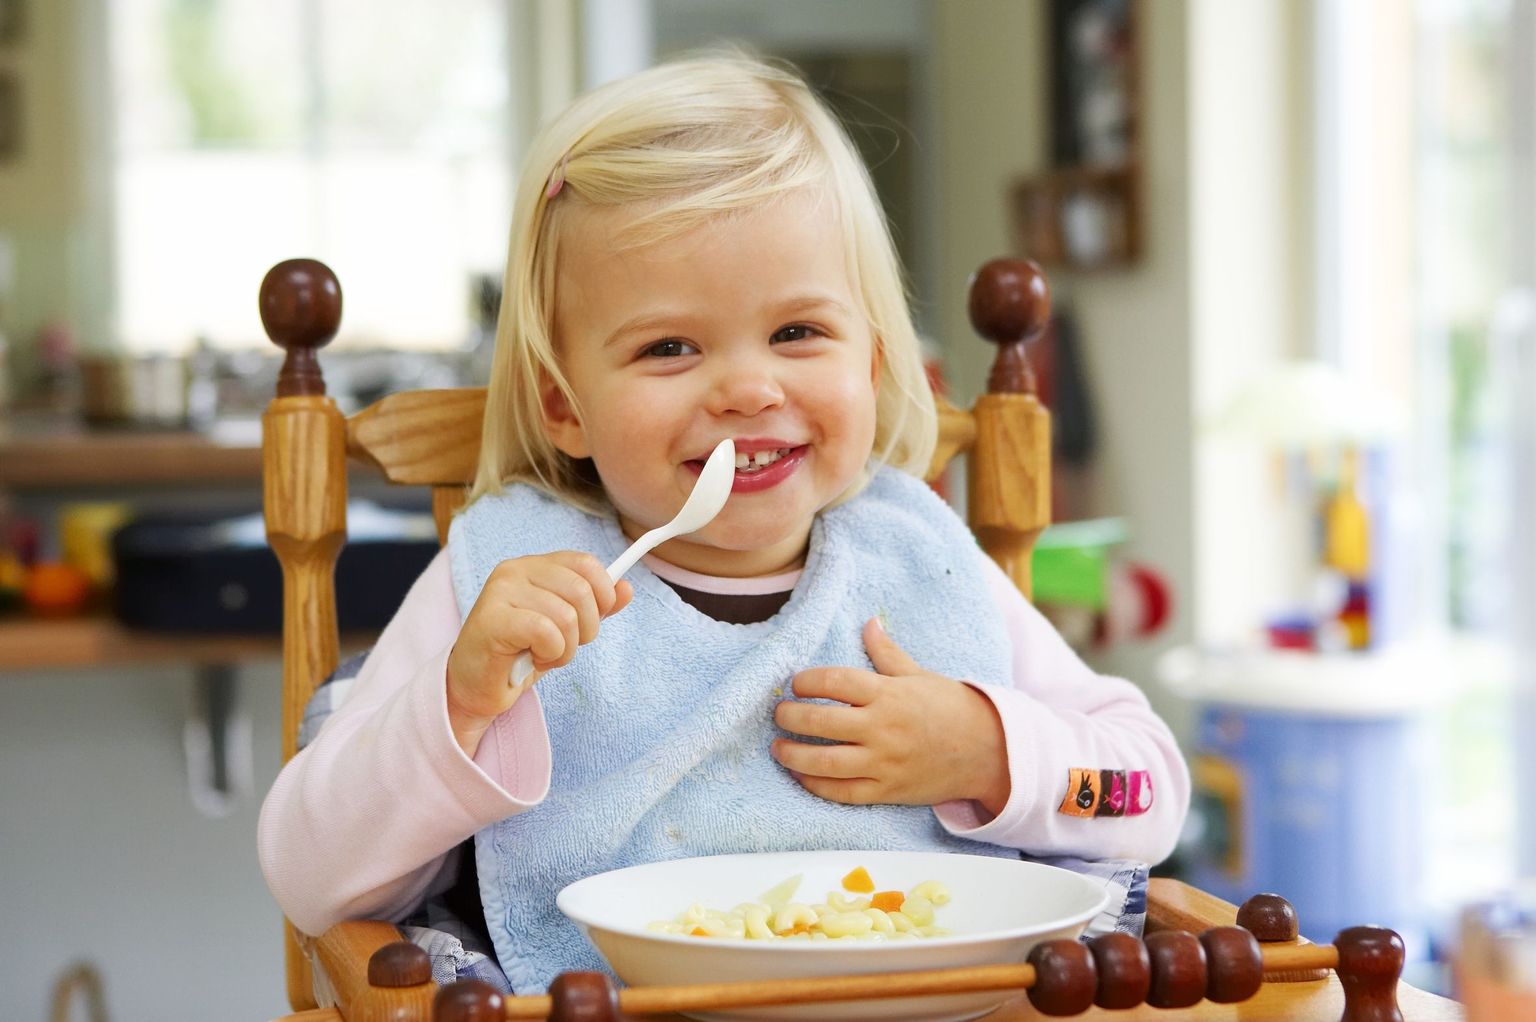 Nn kõnelev kaal aitab lastel süüa aeglasemas tempos.